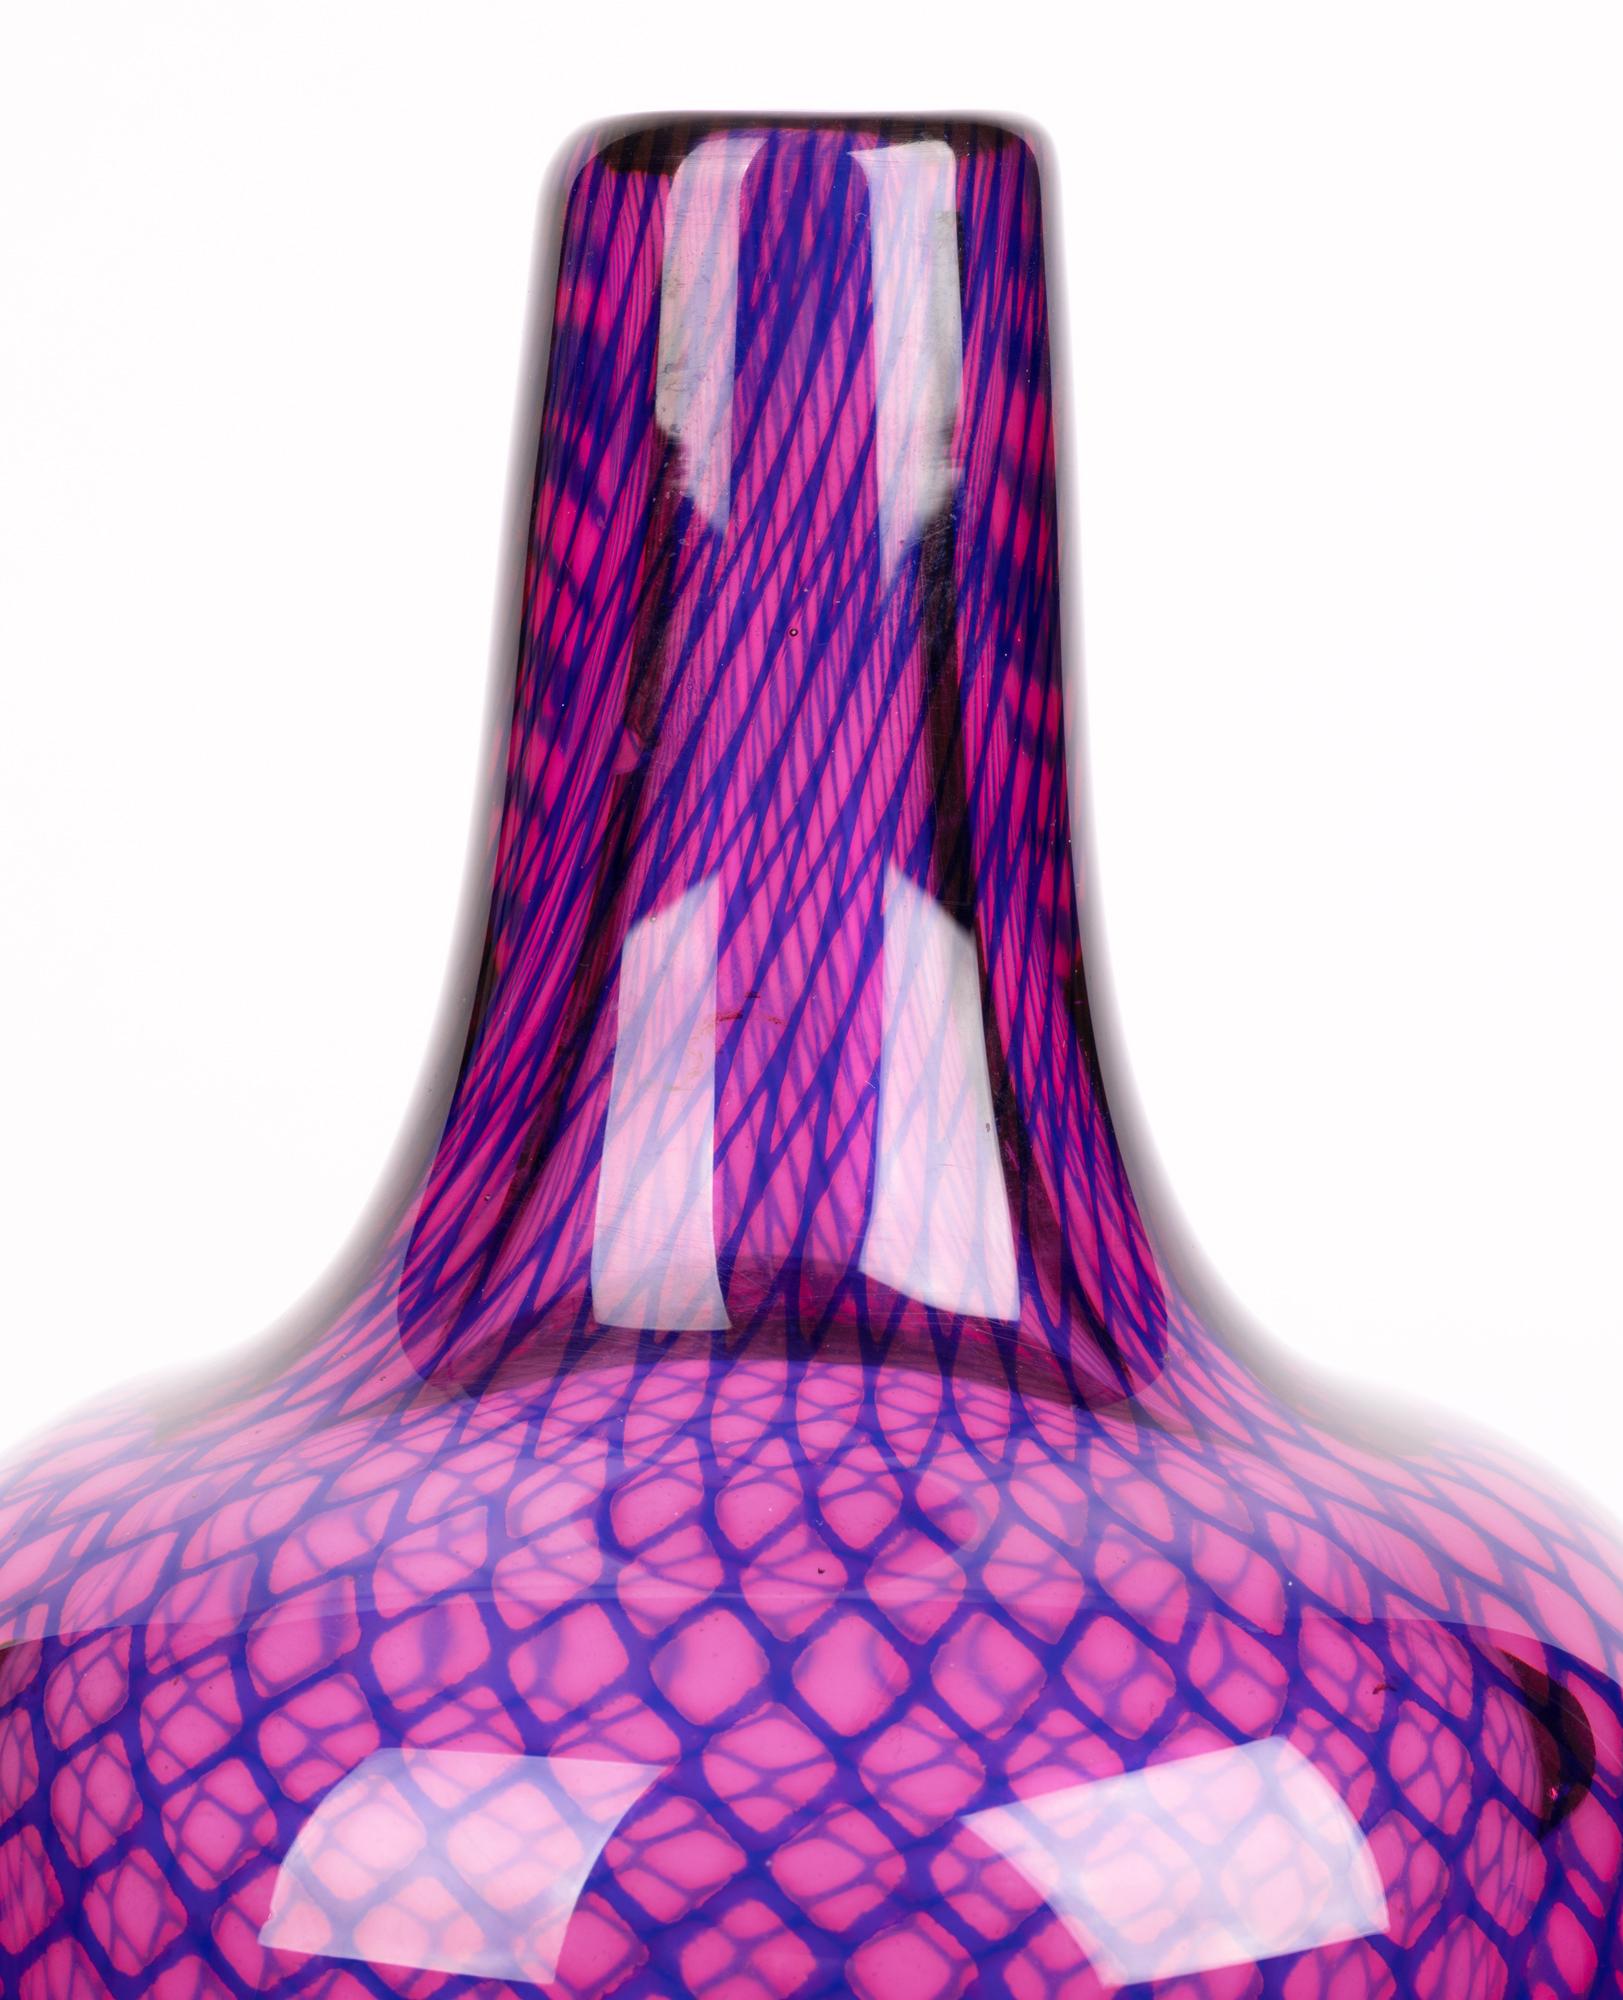 Sven Palmqvist Orrefors Kraka Net Pattern Art Glass Vase For Sale 4